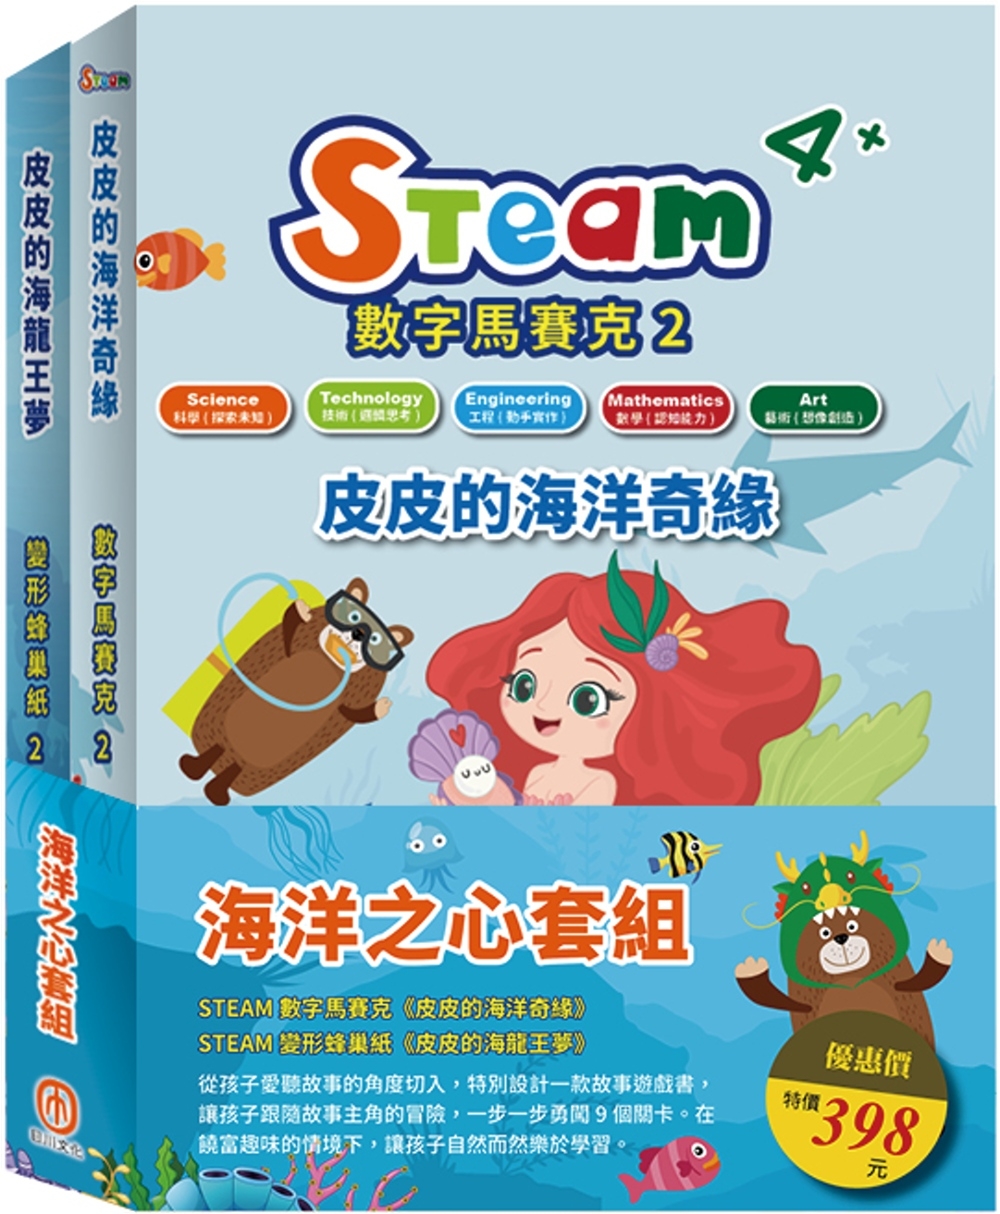 海洋之心 套組：STEAM 數字馬賽克(2)-《皮皮的海洋奇緣》+STEAM變形蜂巢紙(2)-《皮皮的海龍王夢》